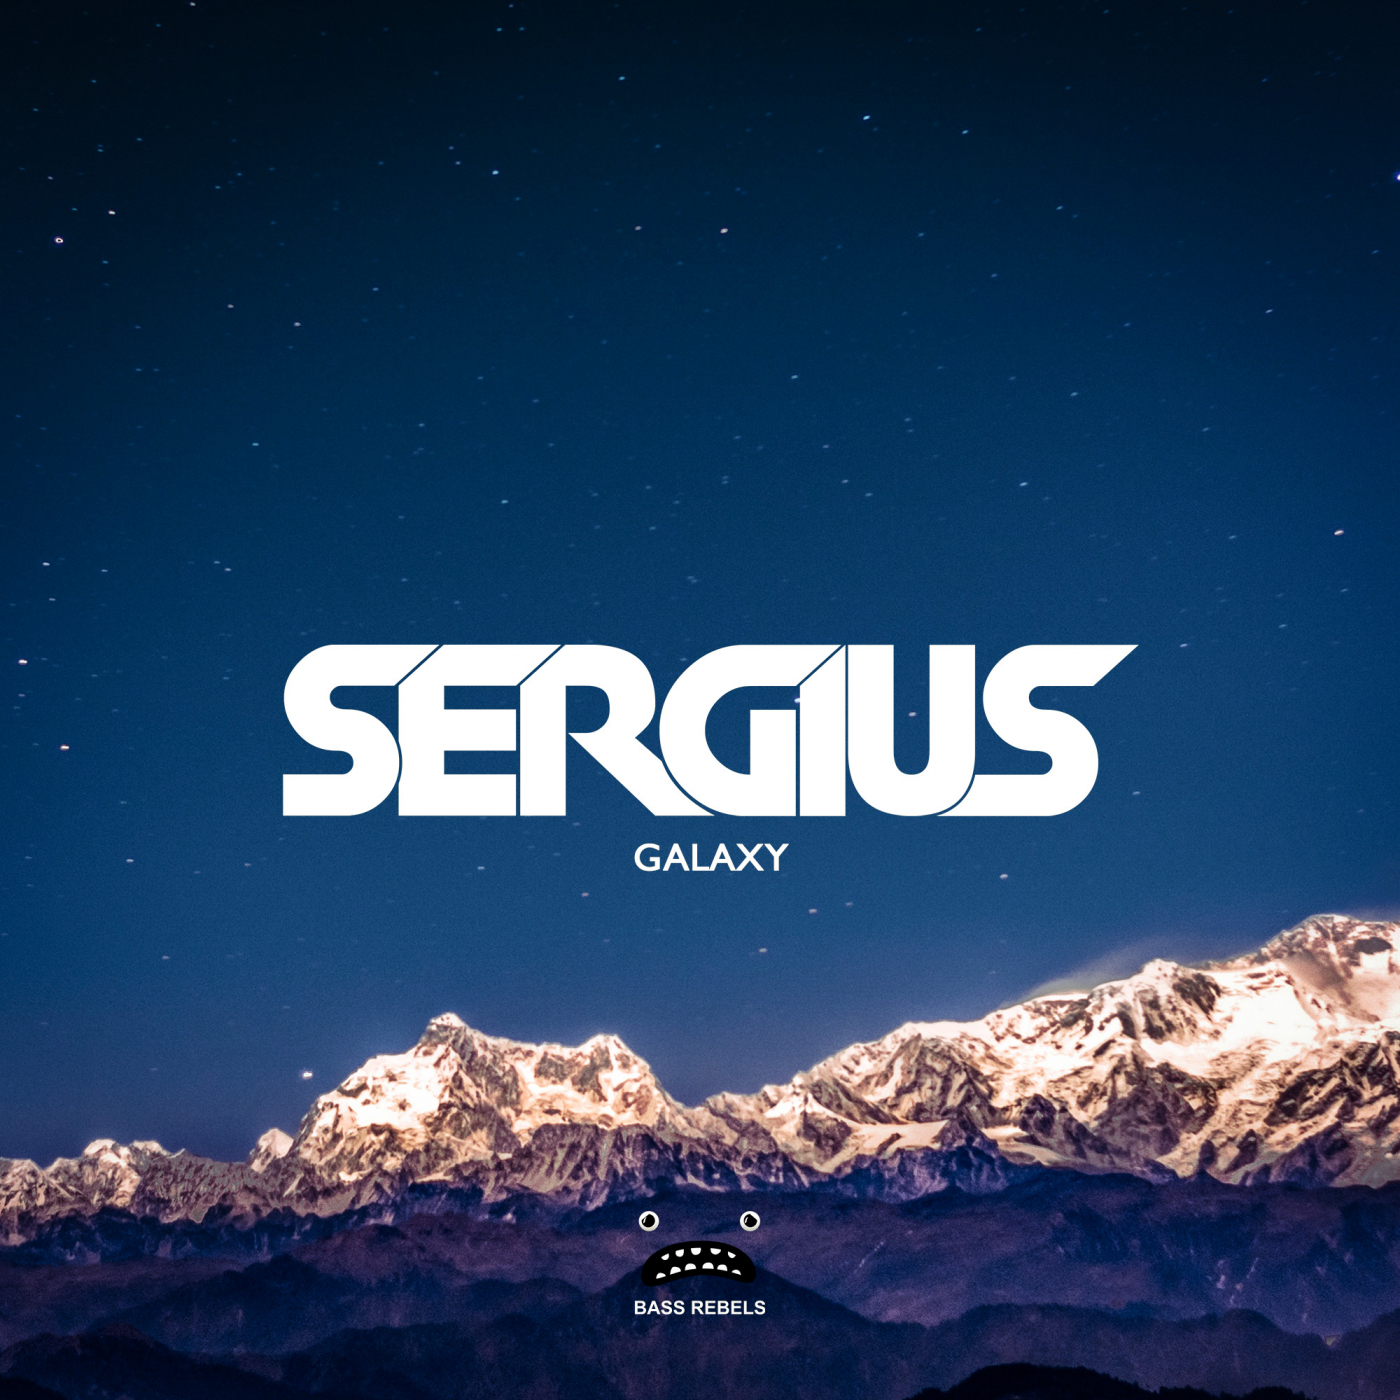 Альбом Galaxy. Sergius логотип. Galaxy песня. Galaxy текст. Galaxy mix